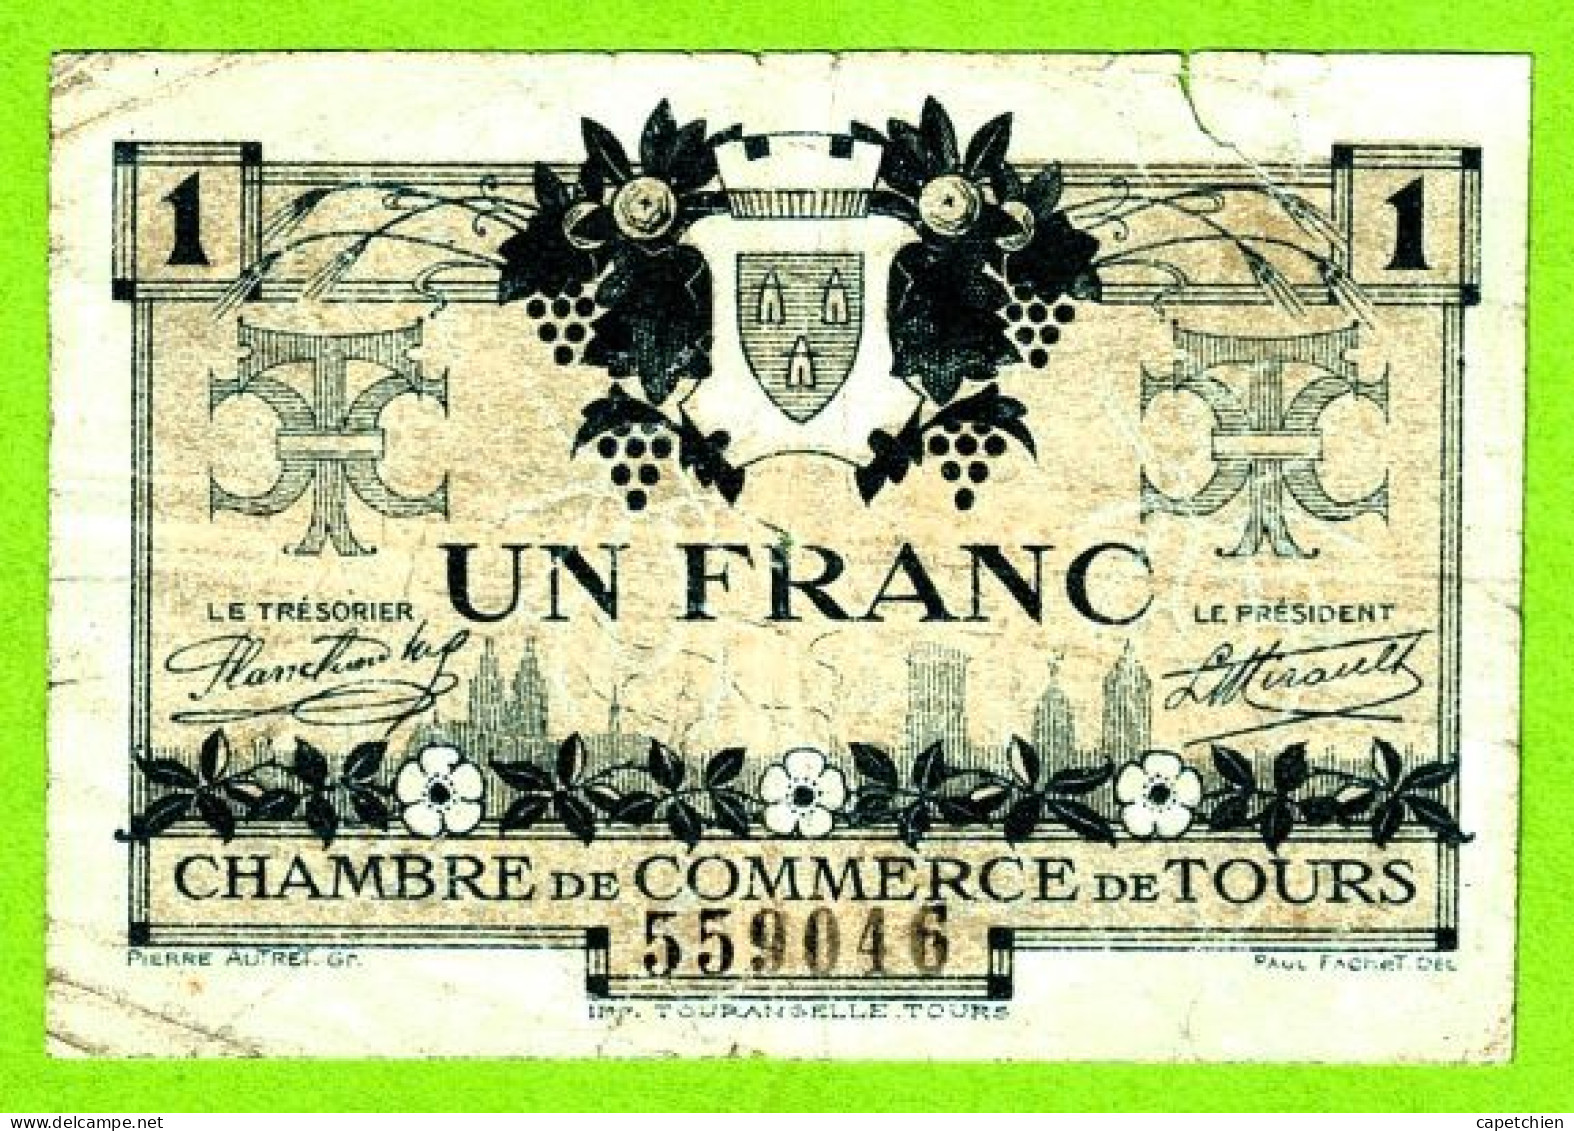 FRANCE / CHAMBRE De COMMERCE De TOURS / 1 FRANC / 9 MAI 1920 / 559046 / SERIE 2eme - Chamber Of Commerce